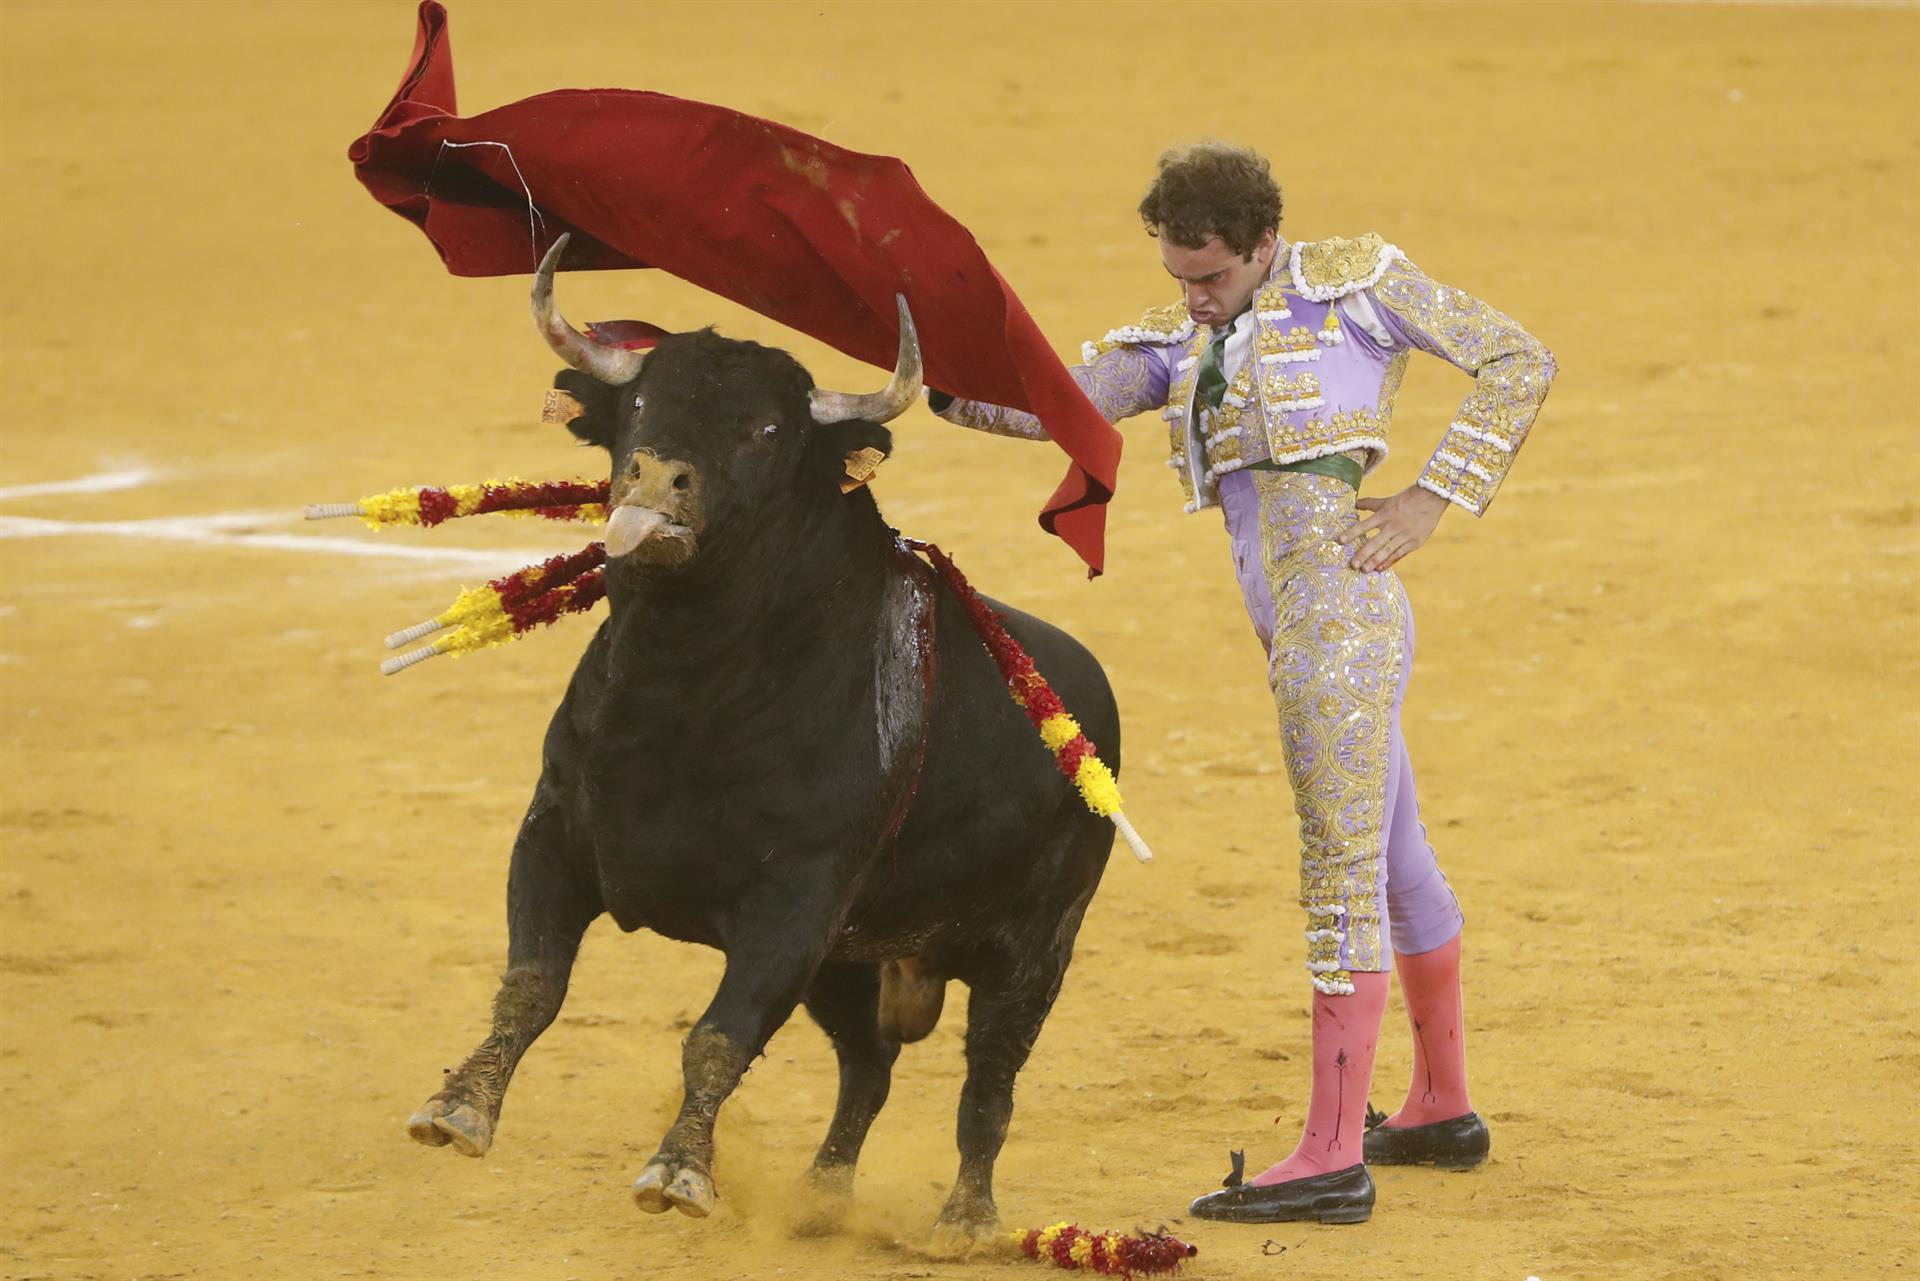 El diestro Víctor Hernández da un pase durante el festejo taurino de la Feria del Pilar celebrado hoy lunes en la plaza de toros de La Misericordia en Zaragoza. EFE/Javier Cebollada.